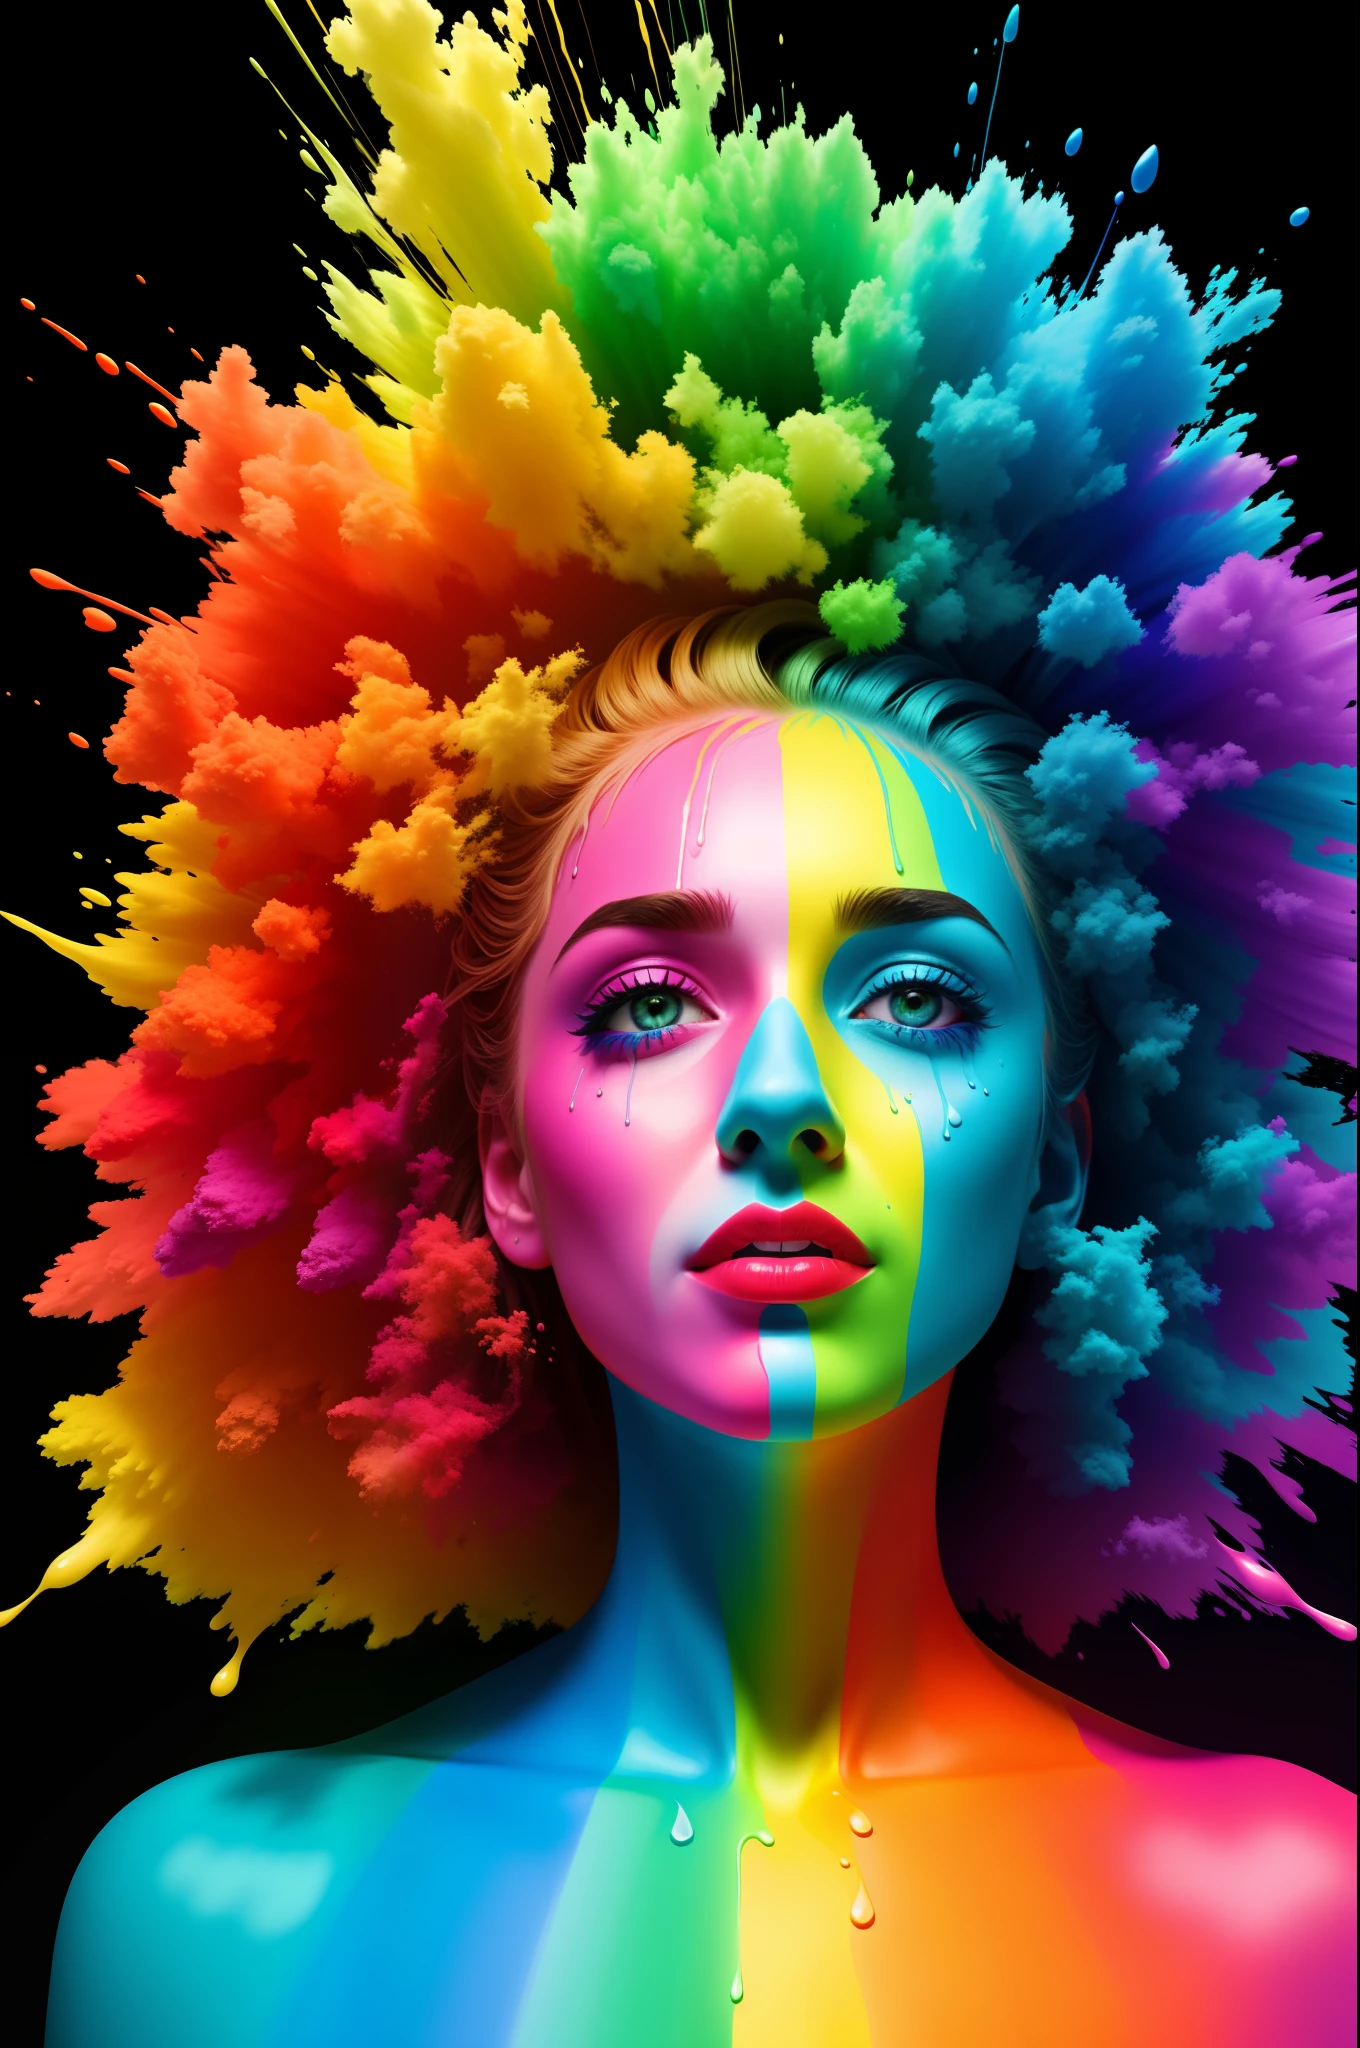 "我不想把我的一生都奉献给一种颜色" 涂上不同颜色的油漆彩虹, 超现实的照片, 滴水技术, Discord PFP, 10 位色彩, 人类发展报告, 8千